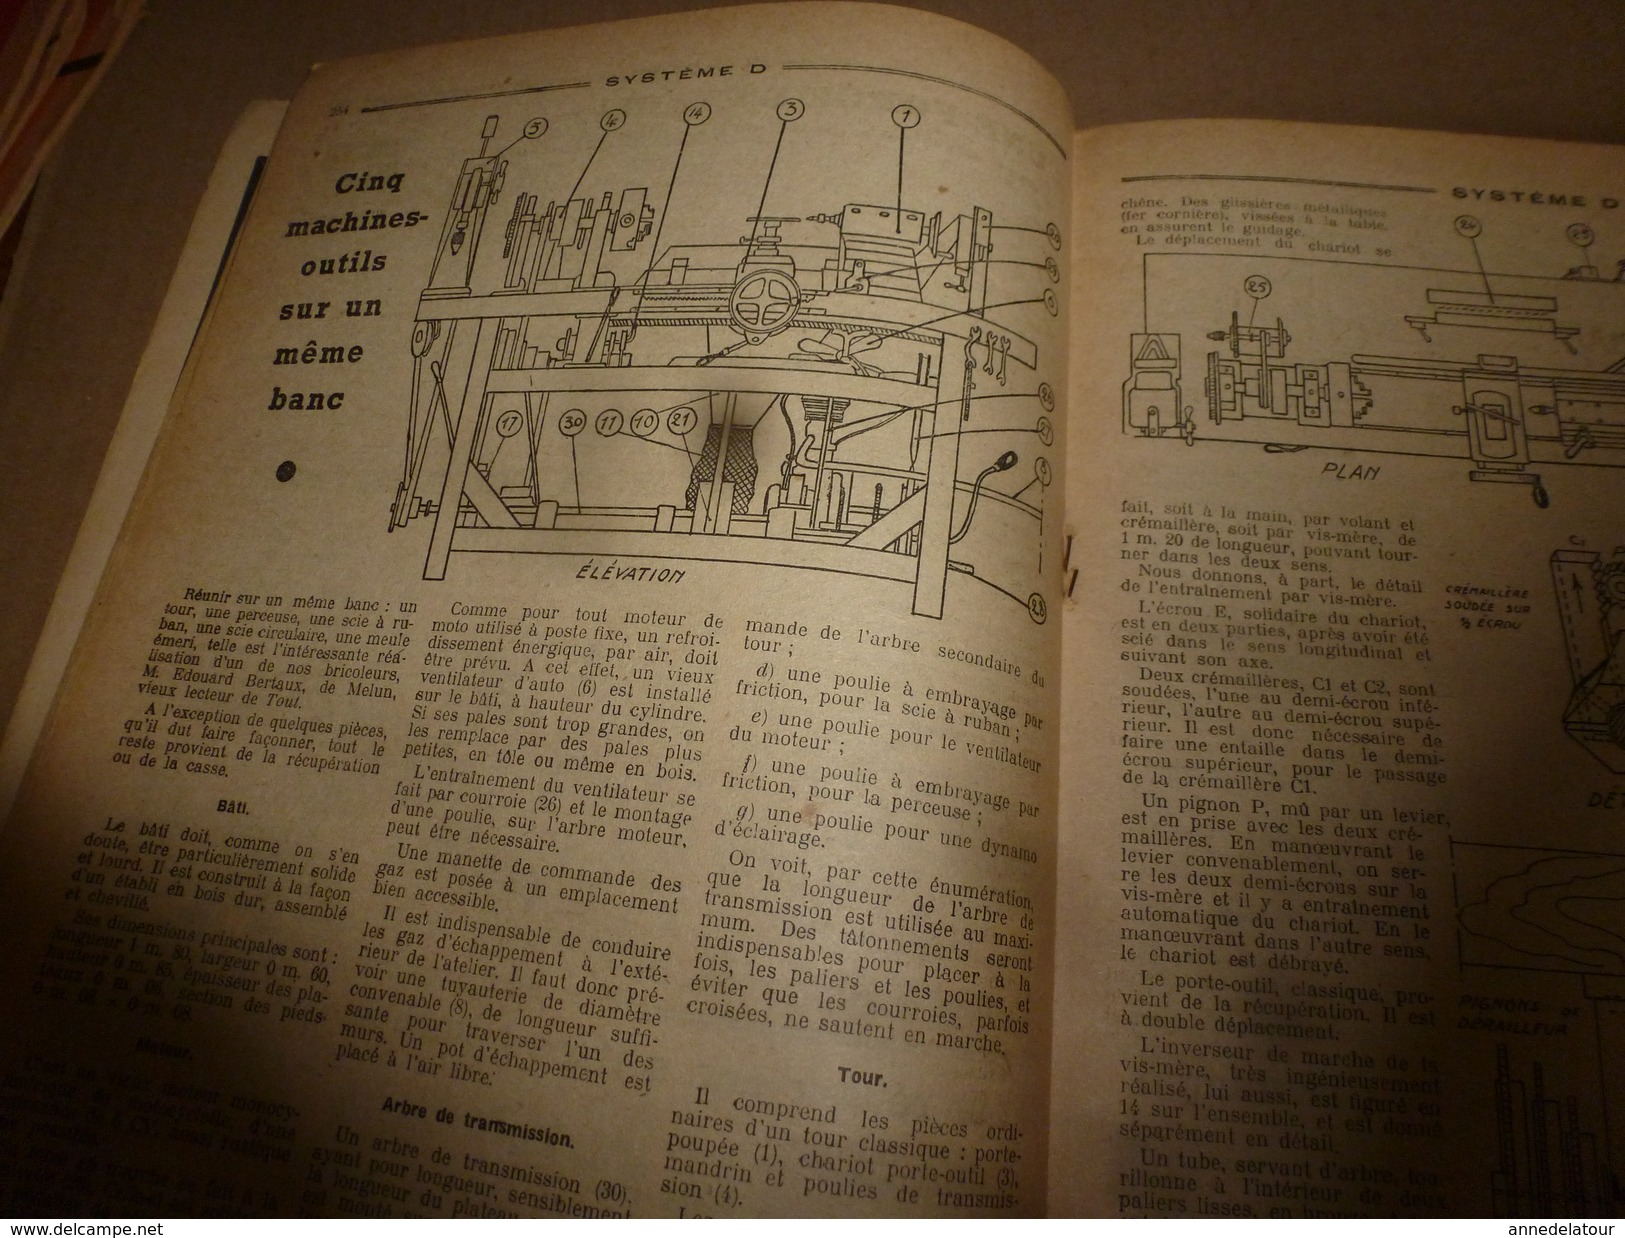 1950 TLSD :Faire -> Auto 2 places;Moteur pour vélo;5 machines-outils en 1;Ponte des poules;Surface en béton;Antenne;etc